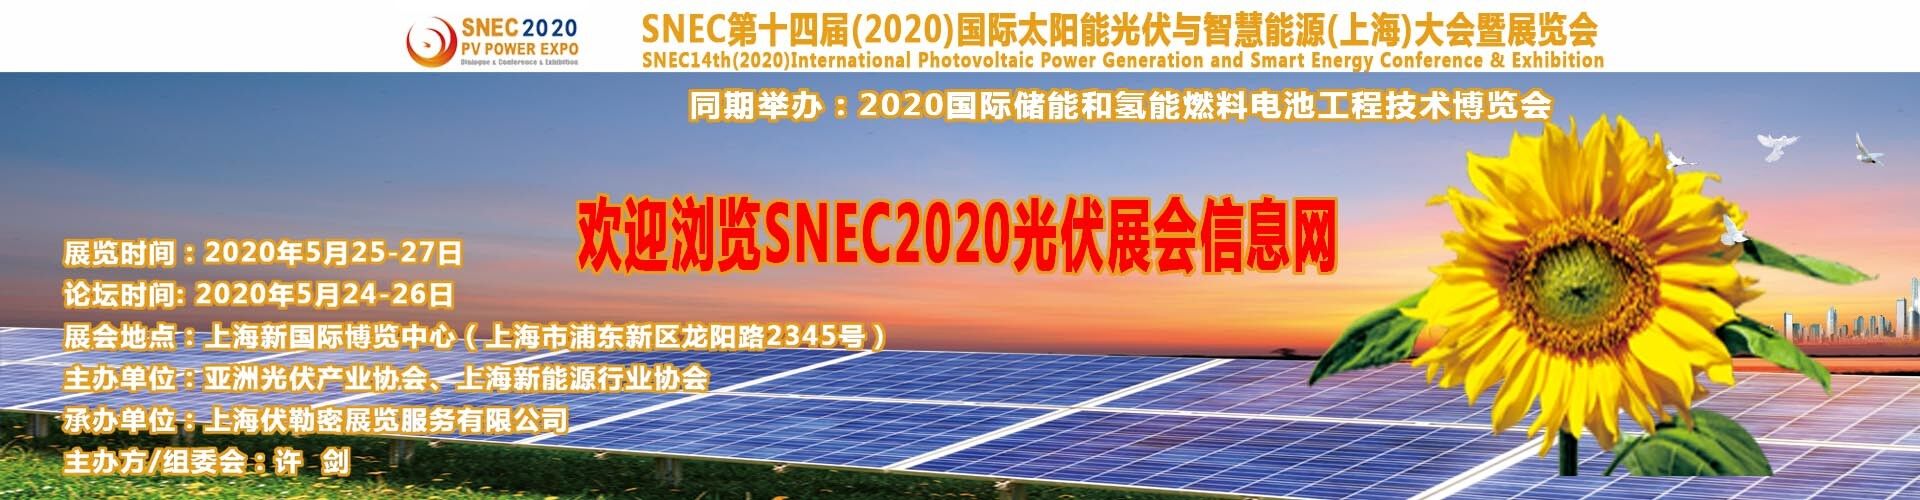 SNEC2018太陽能光伏展會門票